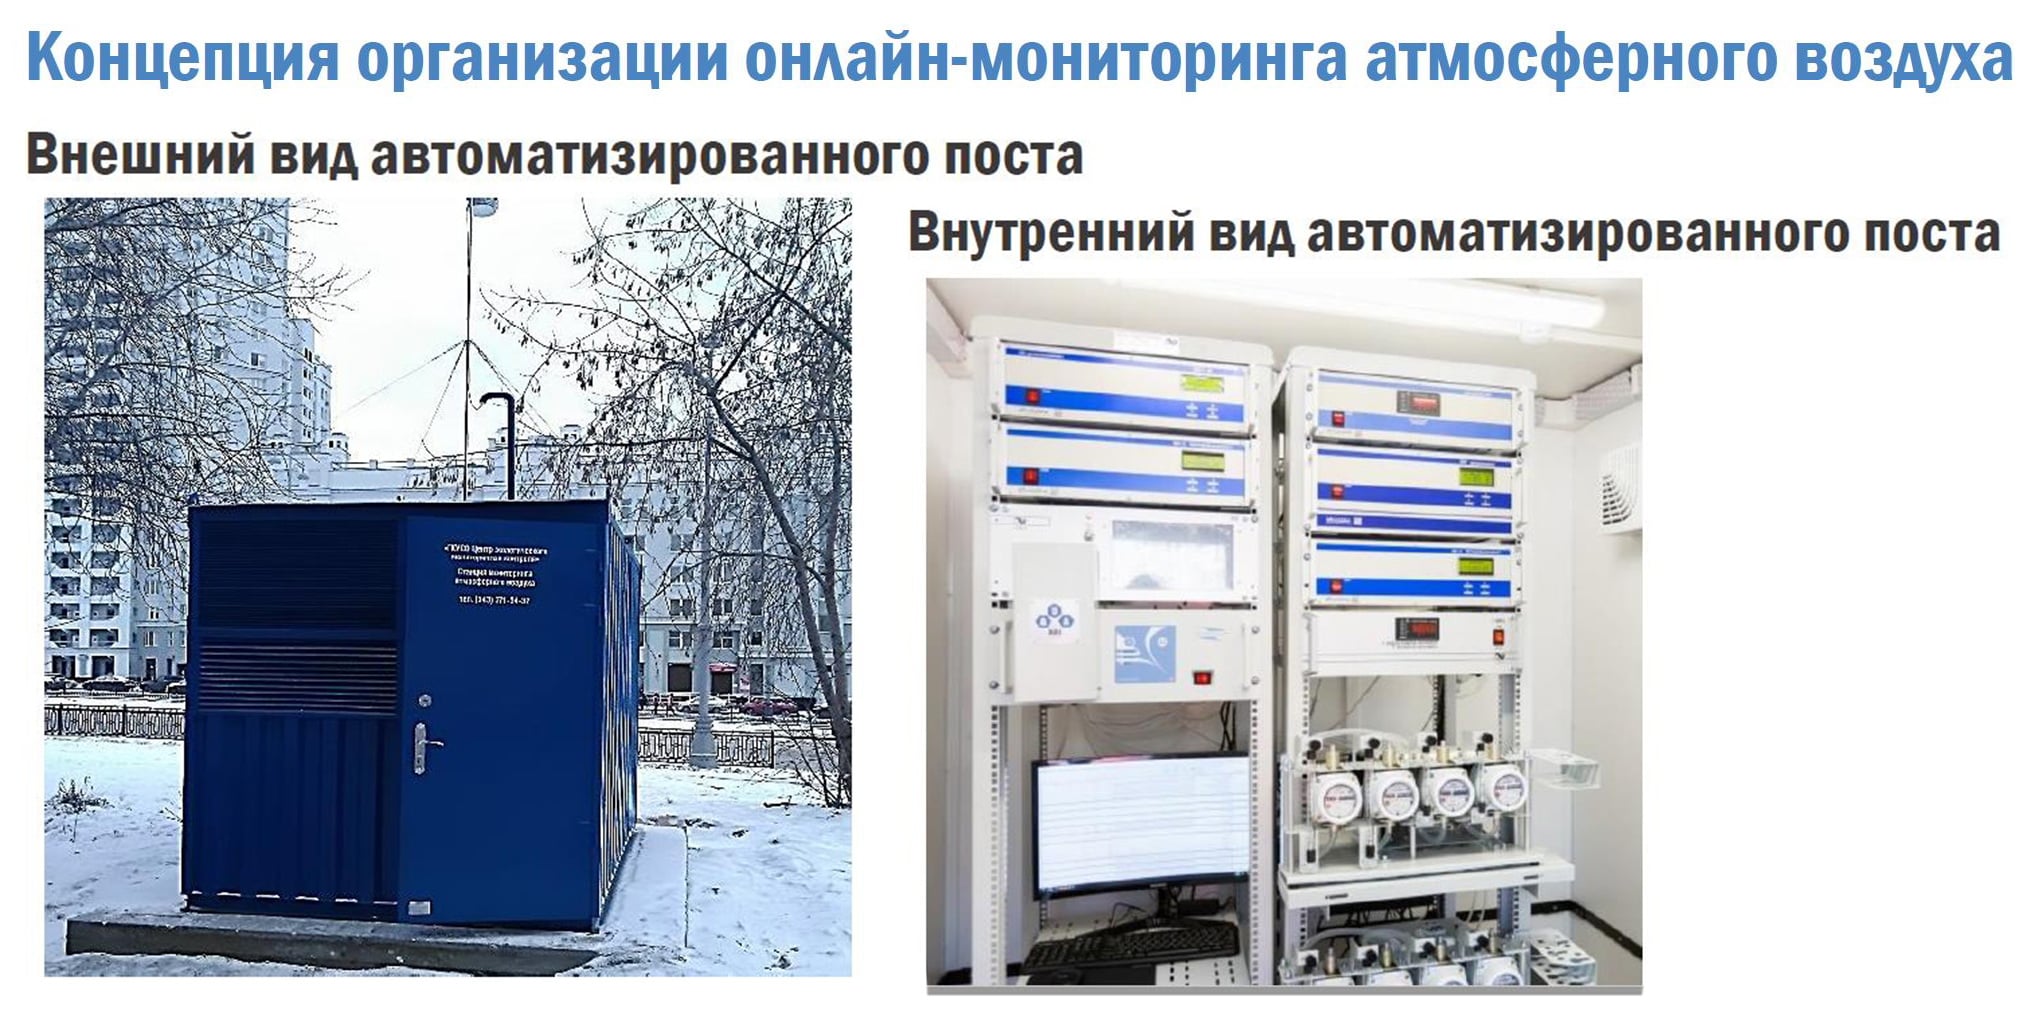 Отслеживать загрязнения атмосферного воздуха в Пермском крае будут онлайн